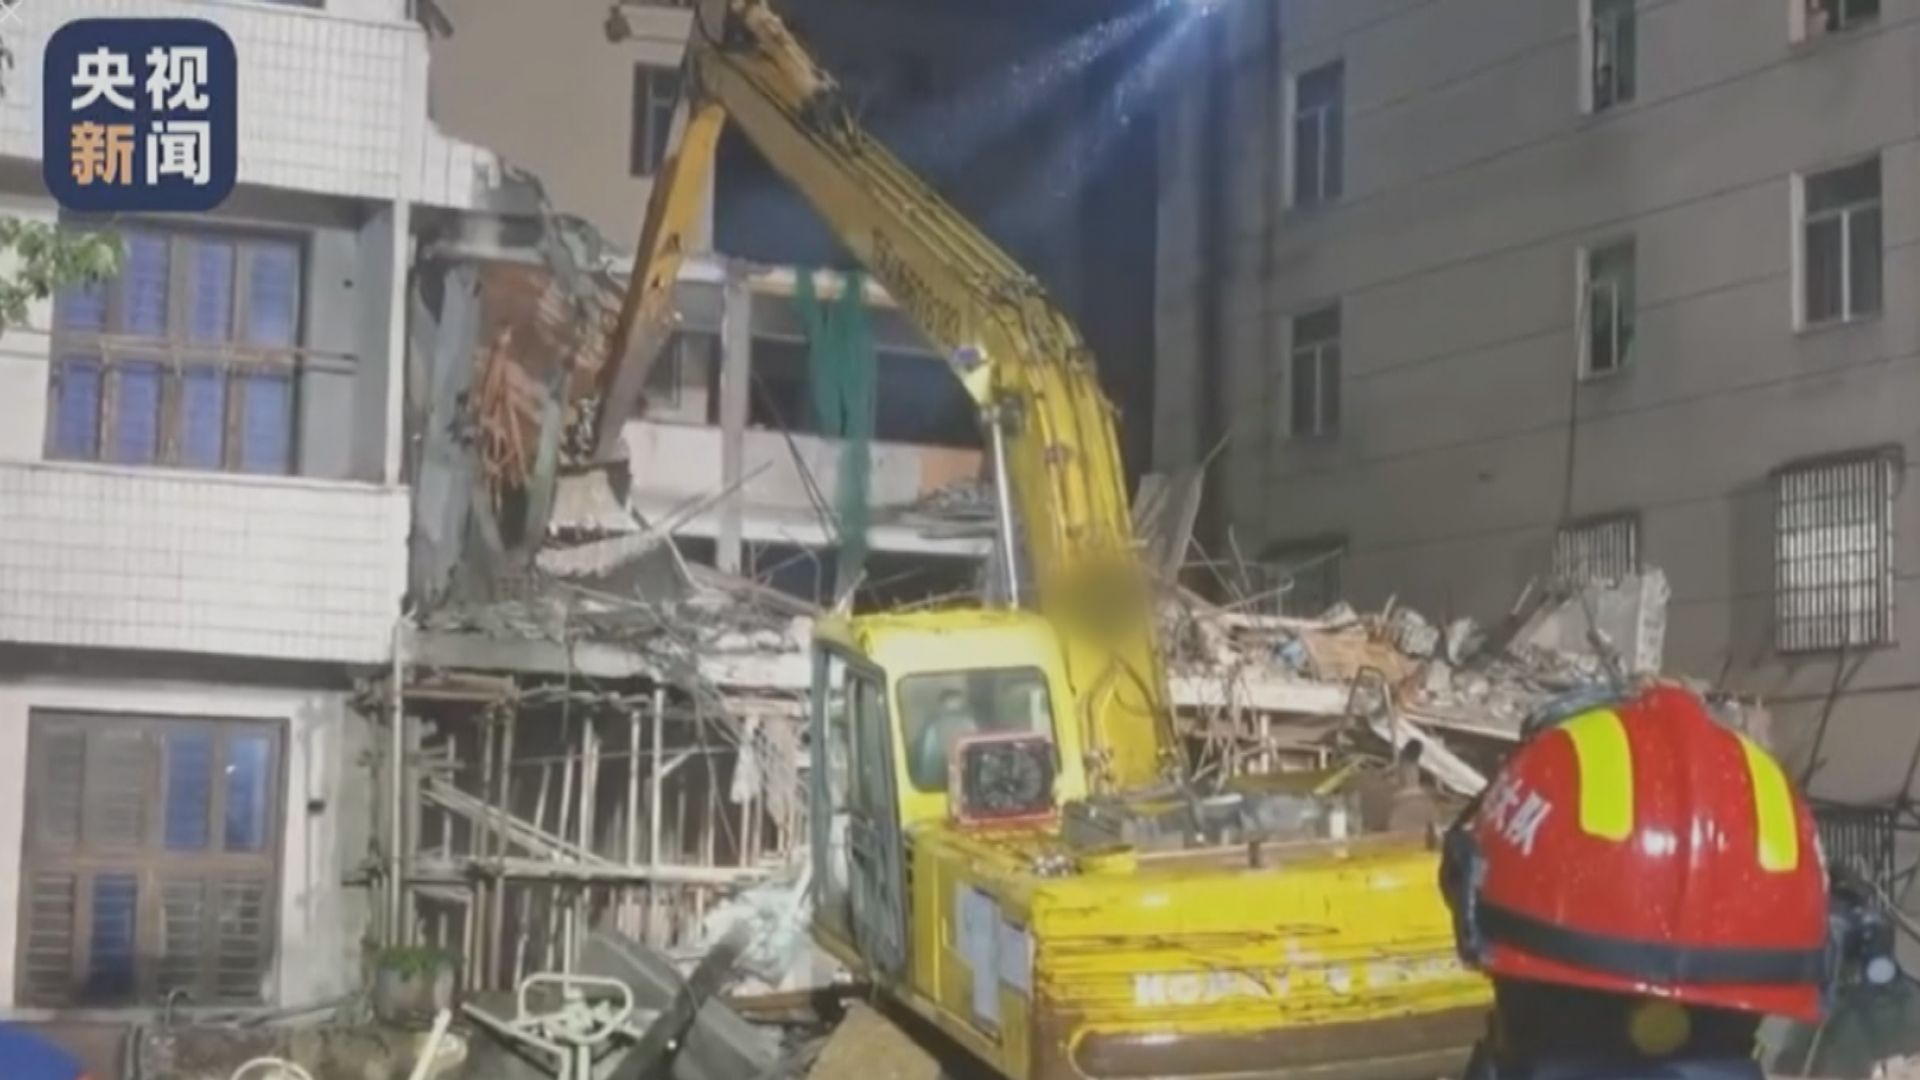 溫州永嘉縣翻新中民房倒塌 3人被找出後無生命體徵